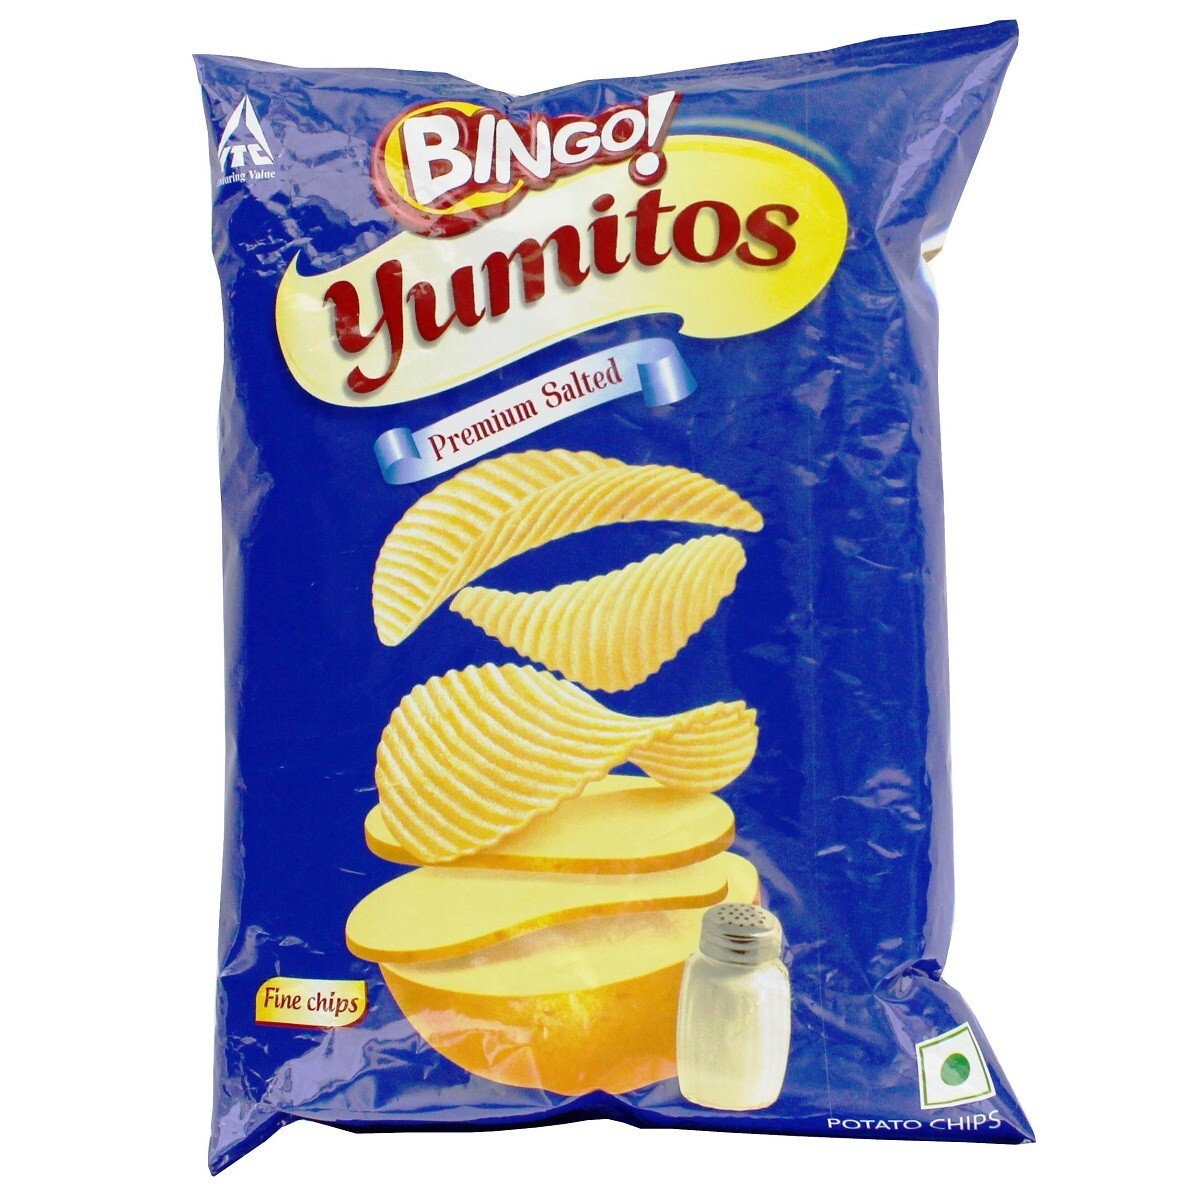 Bingo Yumitos Salted Potato Chips 55g